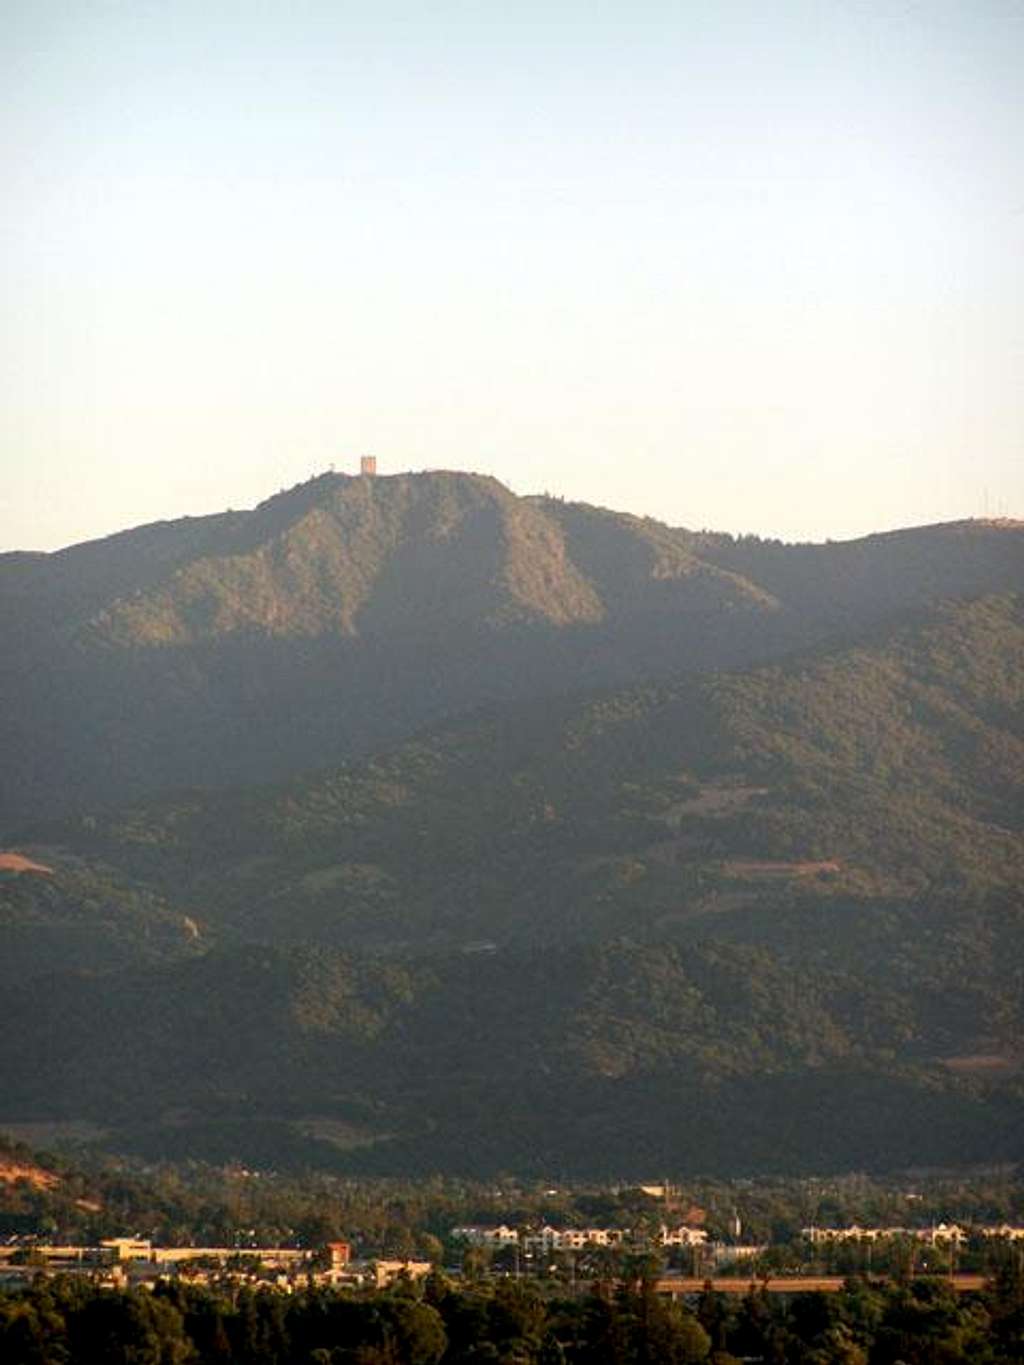 Mt. Umunhum